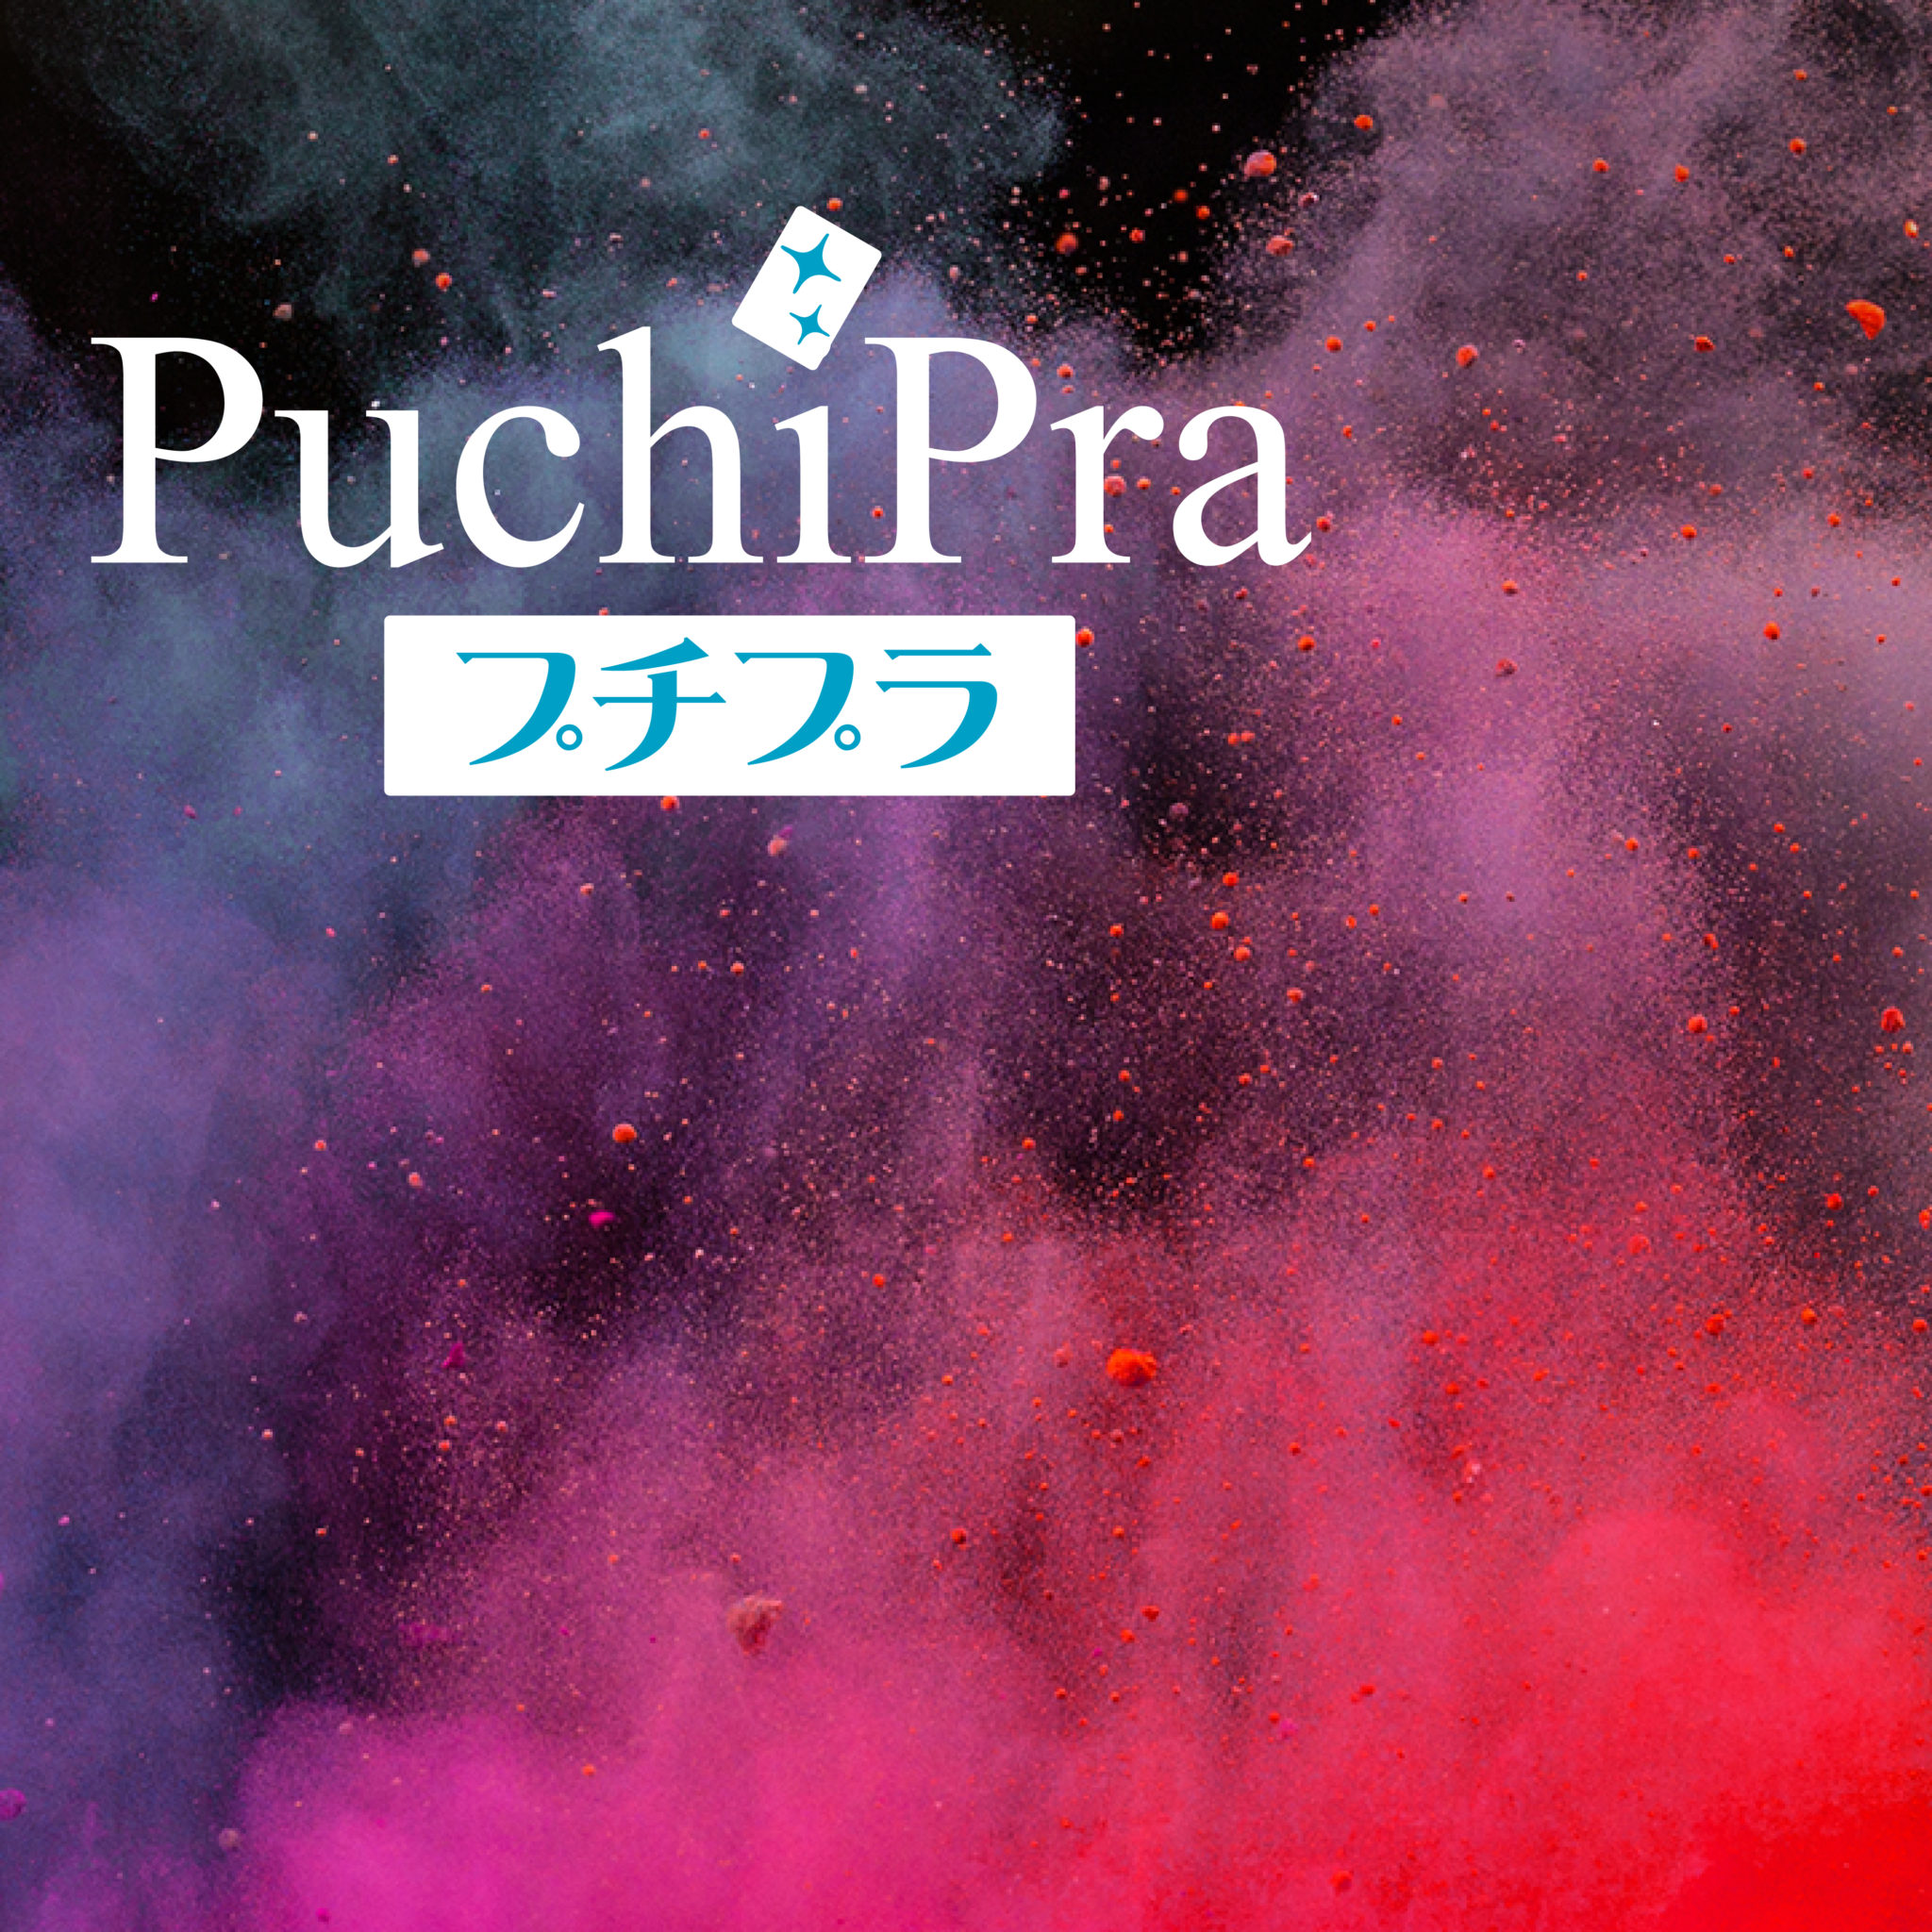 PuchiPra